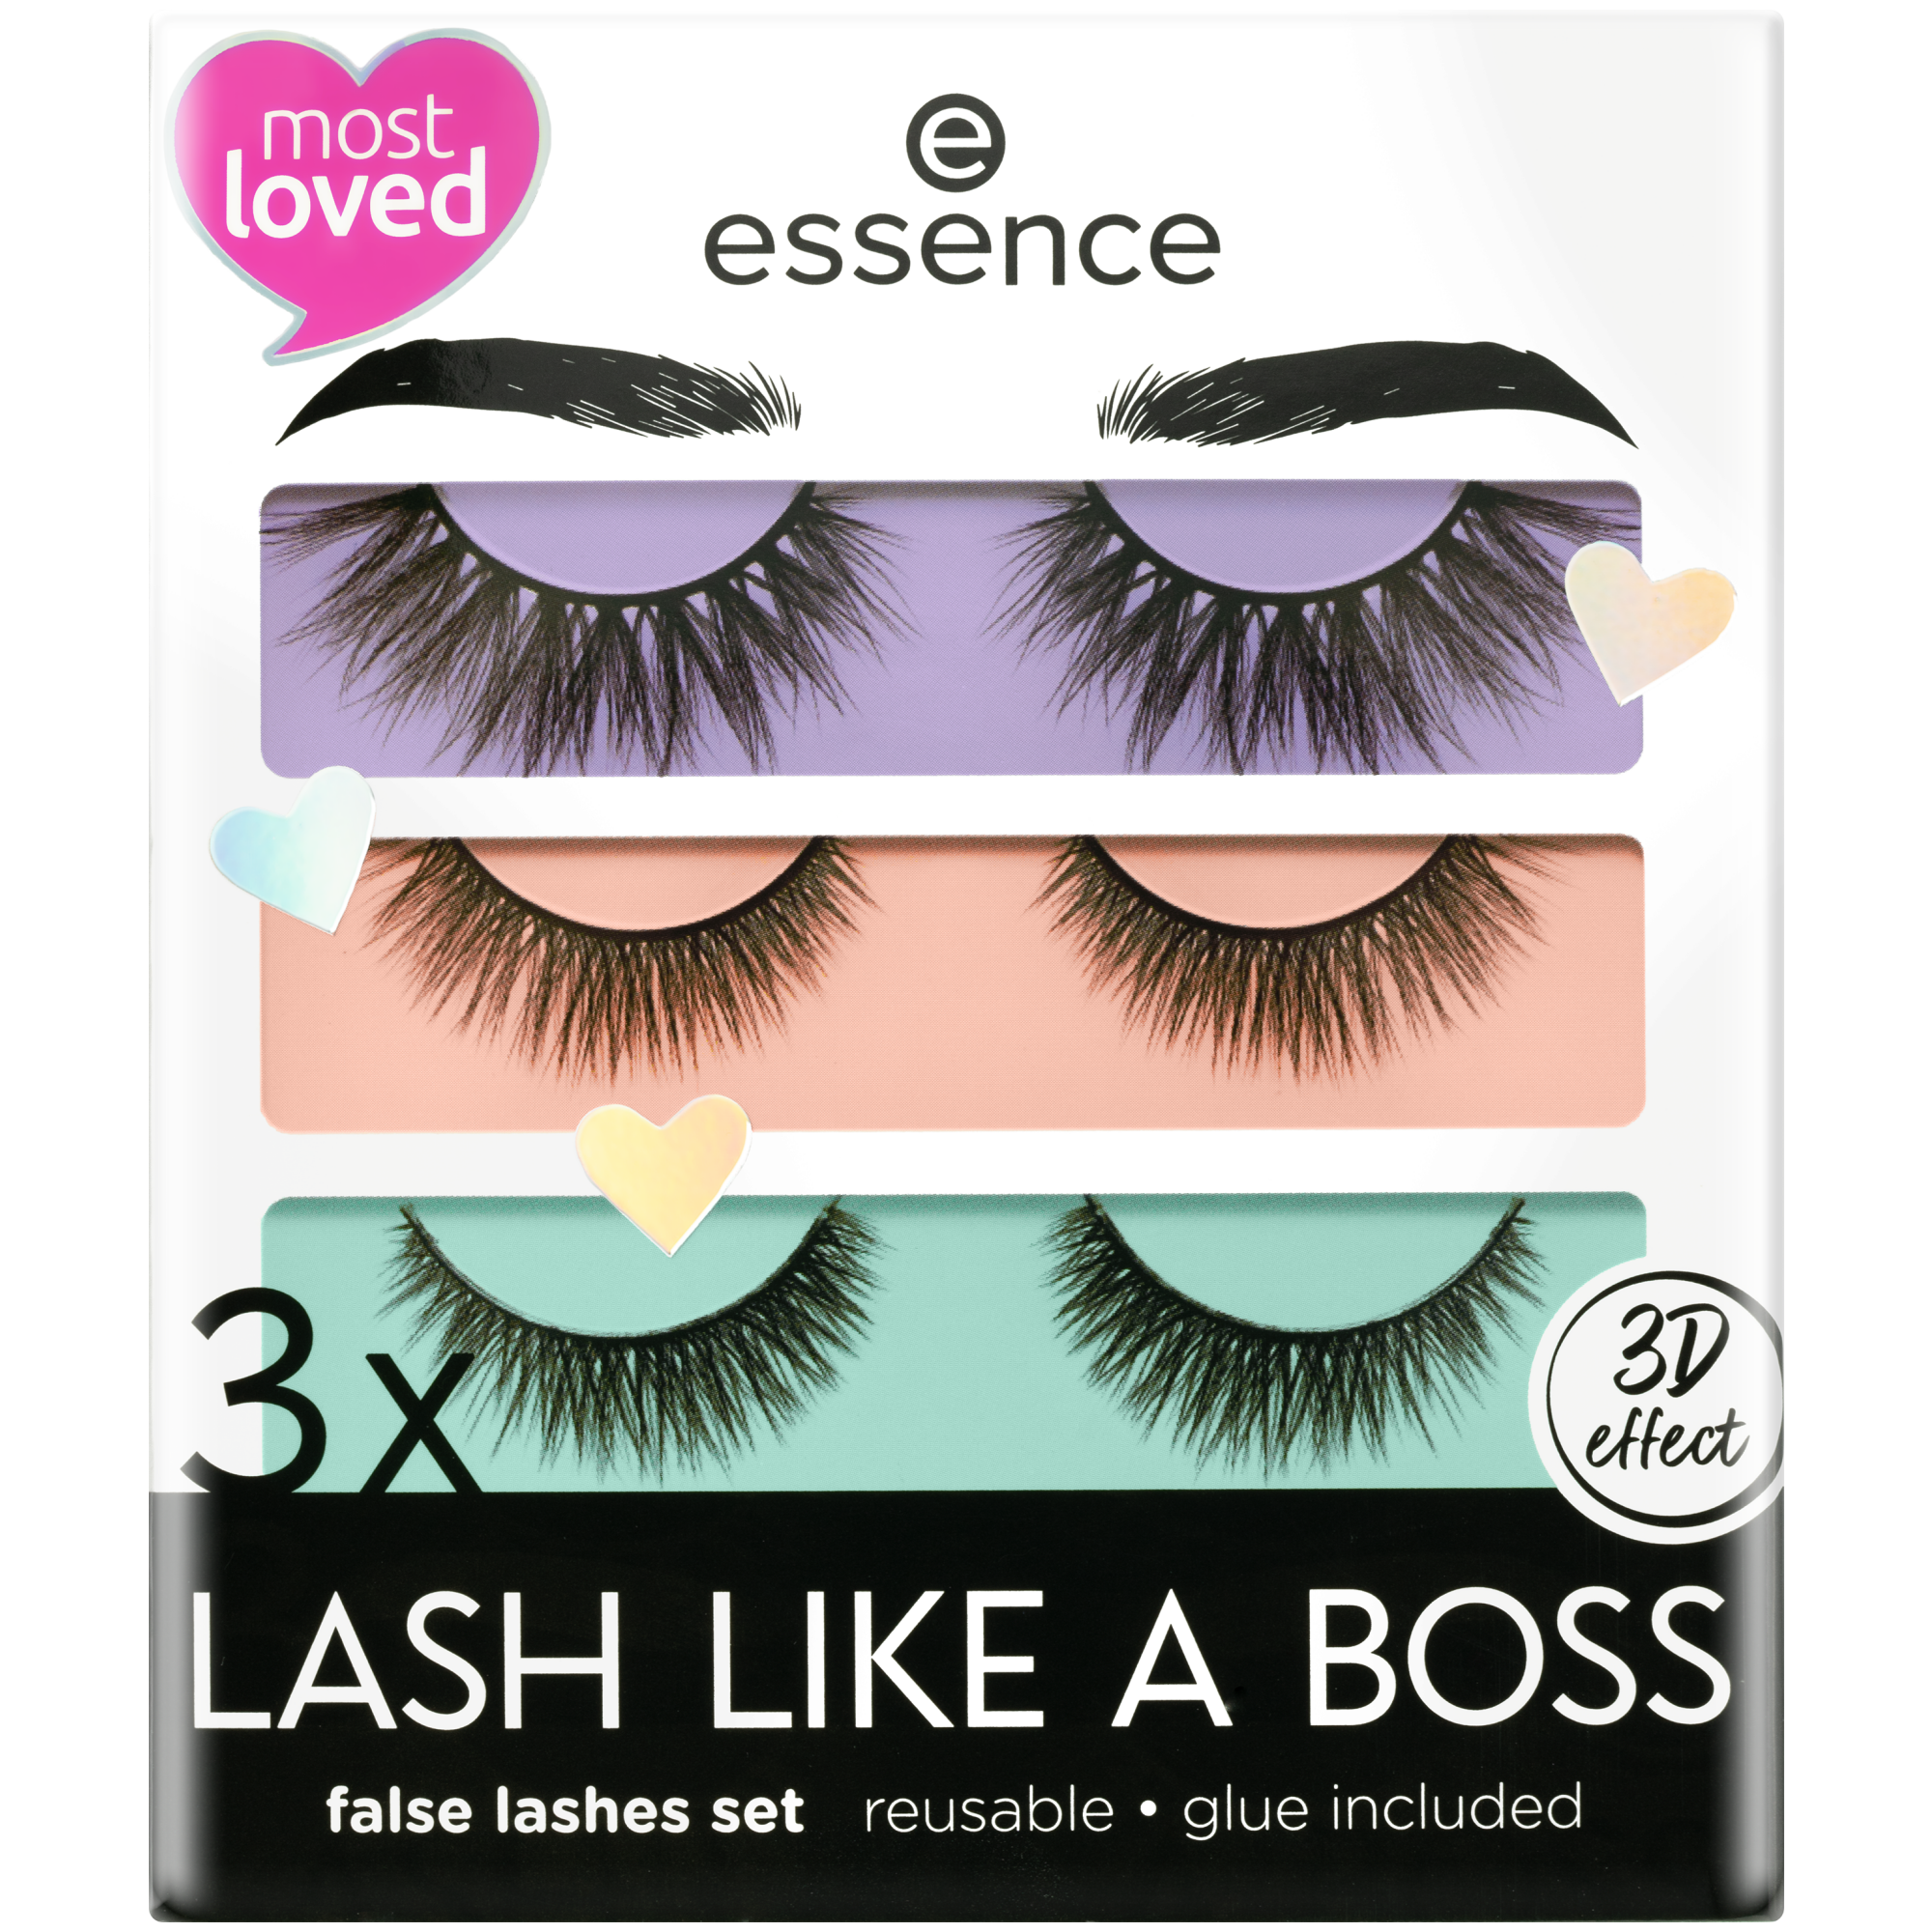 3X Lash Like A Boss False Lashes – essence makeup